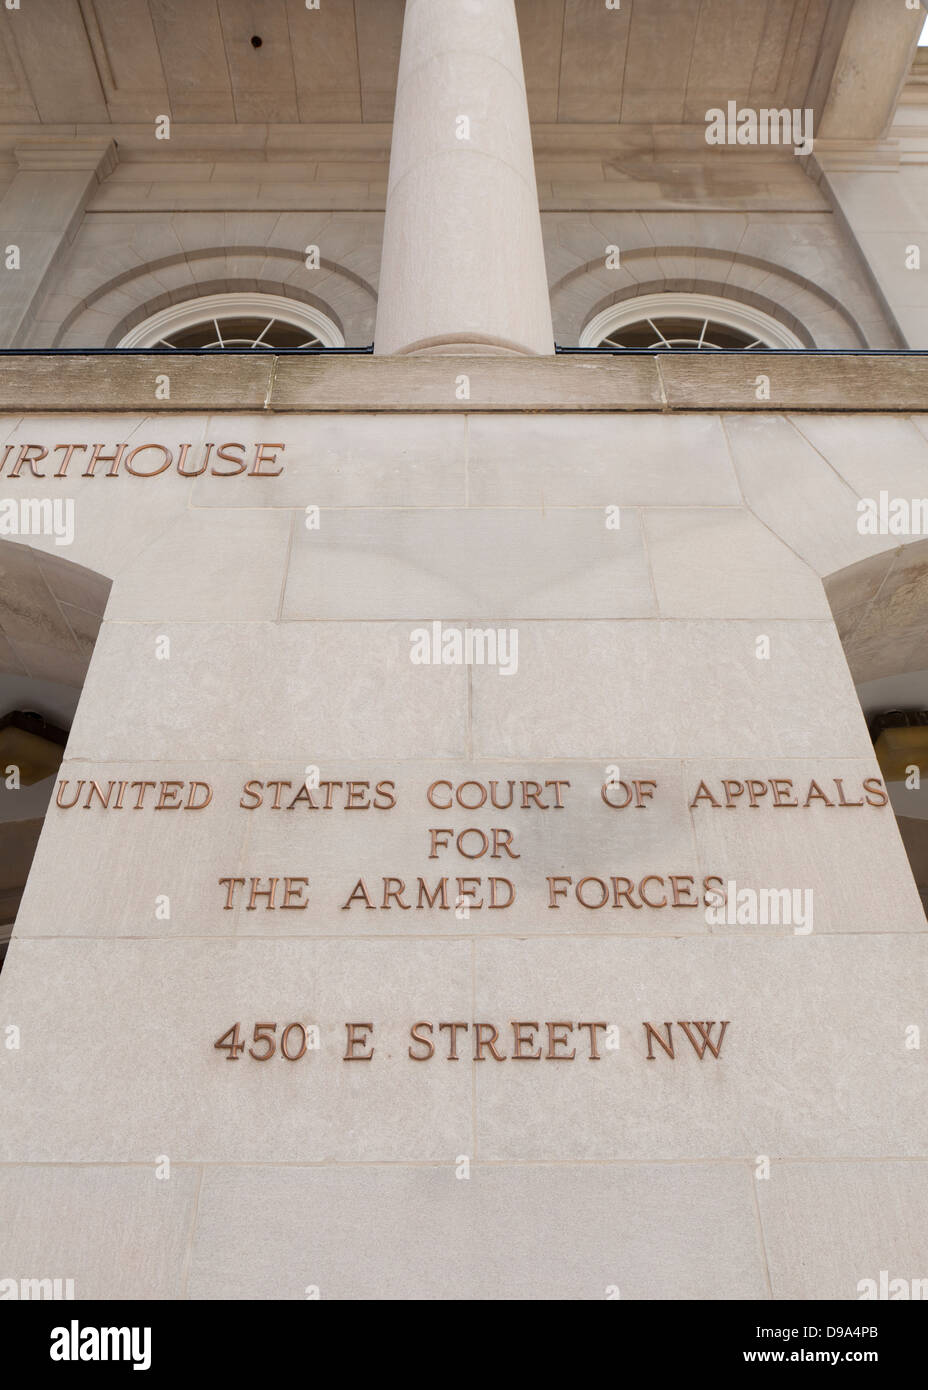 Corte de Apelaciones de Estados Unidos para las Fuerzas Armadas edificio - Washington, DC, EE.UU. Foto de stock